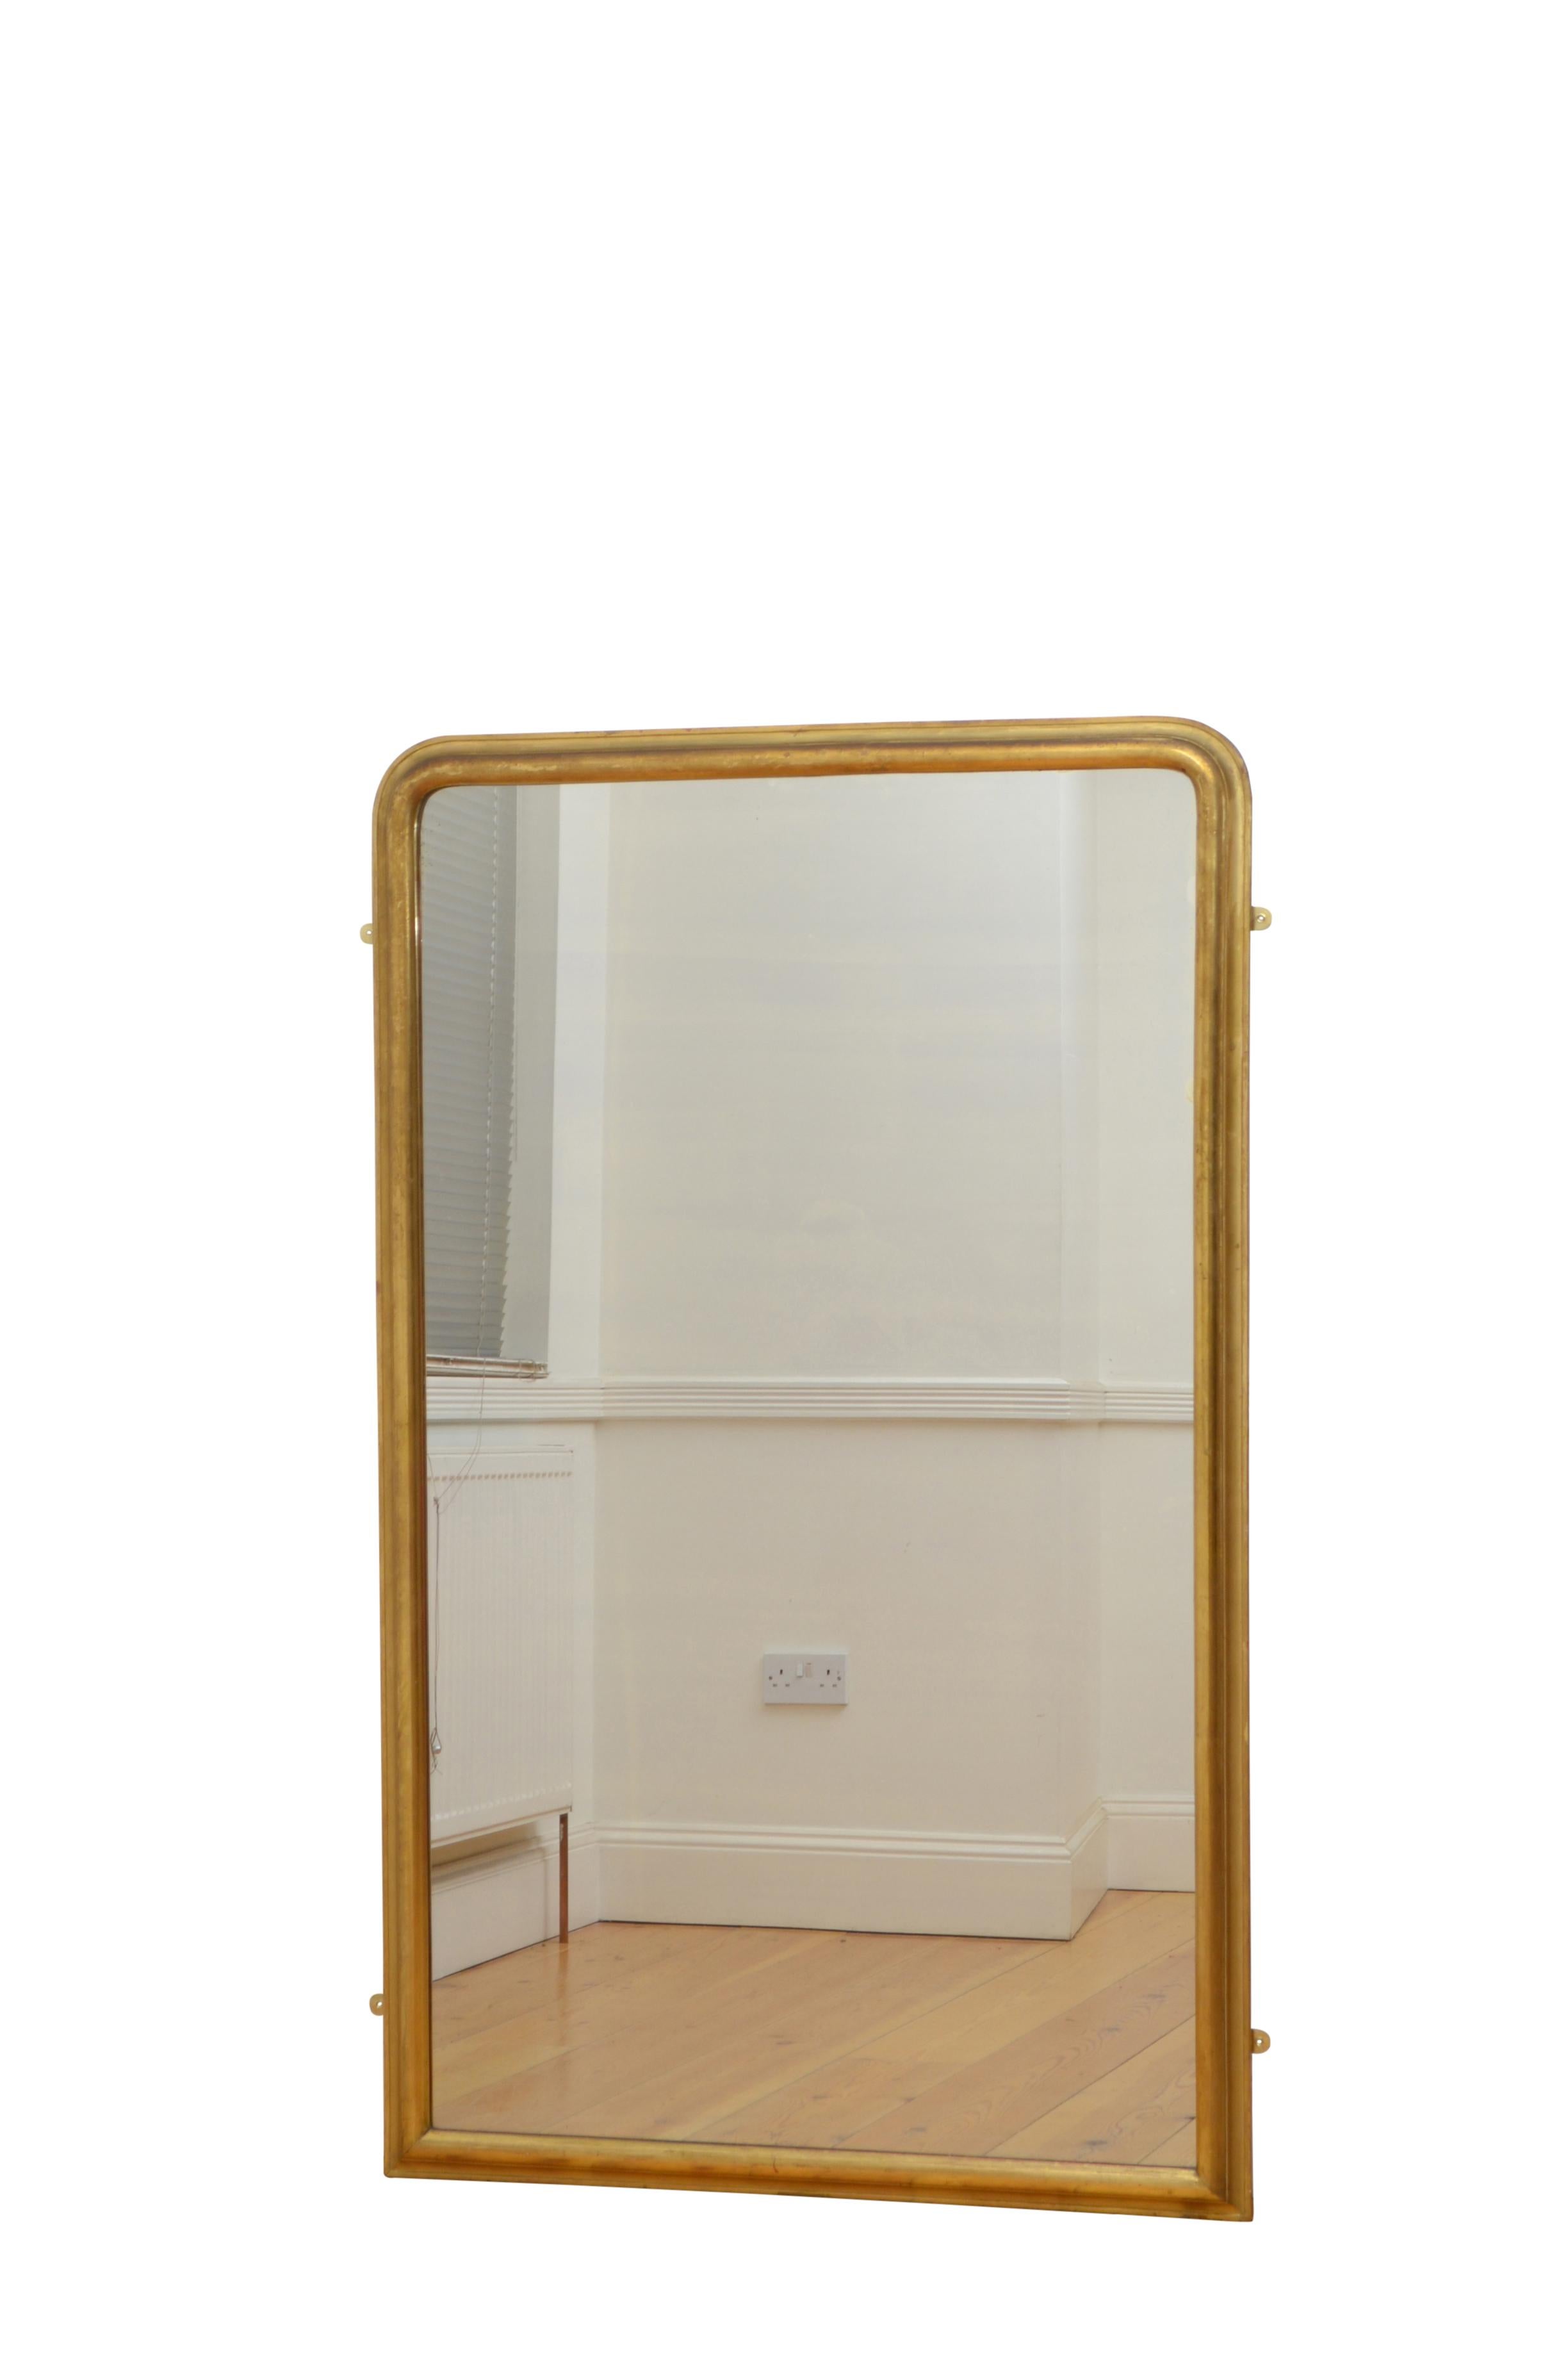 0235 Hochwertiger, schlichter und eleganter Spiegel aus dem frühen 19. Jahrhundert in voller Länge oder Pier, mit Originalglas mit Luftblasen und einigen Stockflecken in einem vergoldeten Rahmen mit Kissen.
Dieser antike Spiegel behält seine